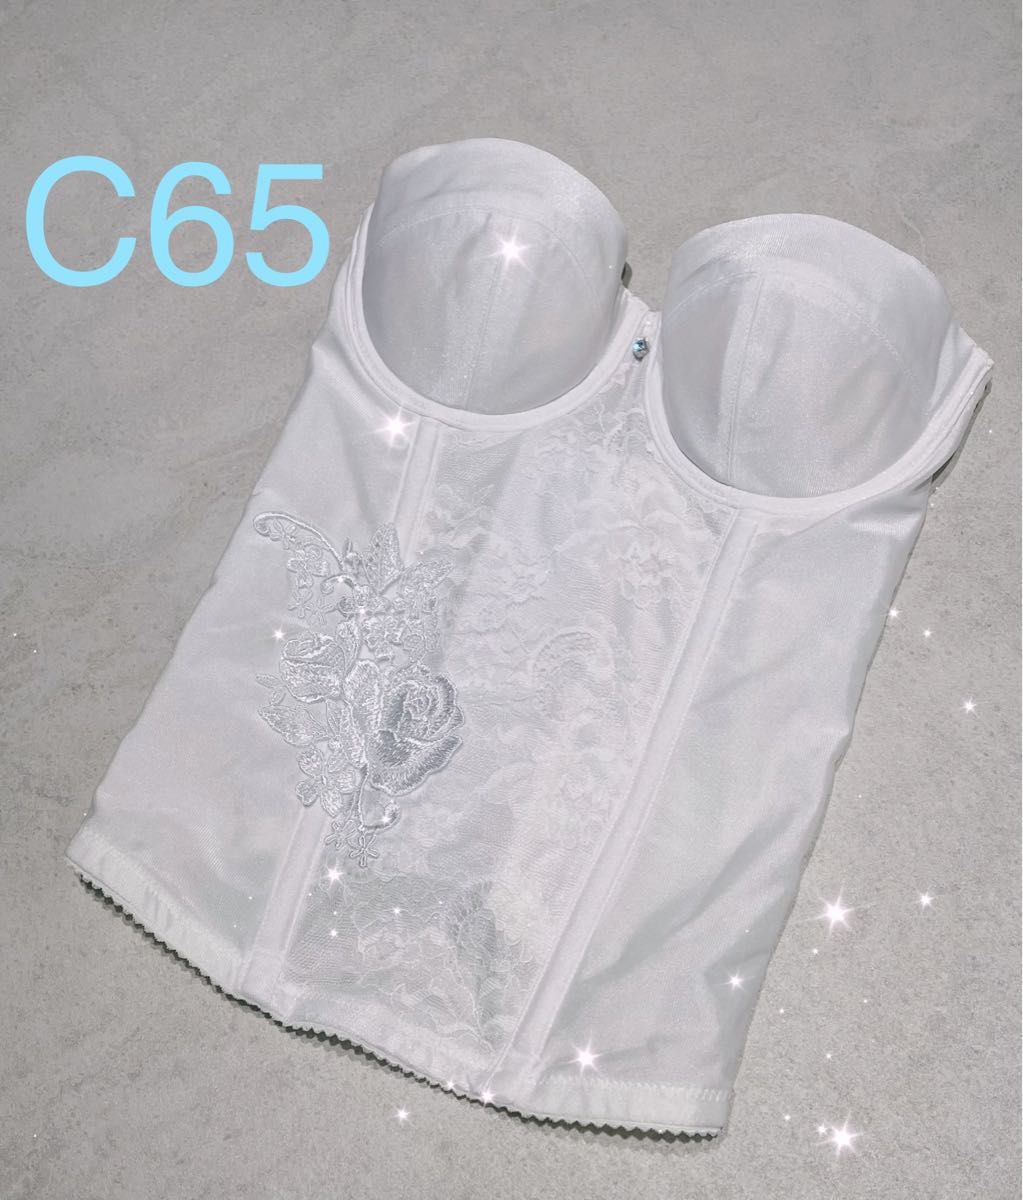 美品 ワコール ｗｉｎｇ ブライダルインナー ホワイト size C65 